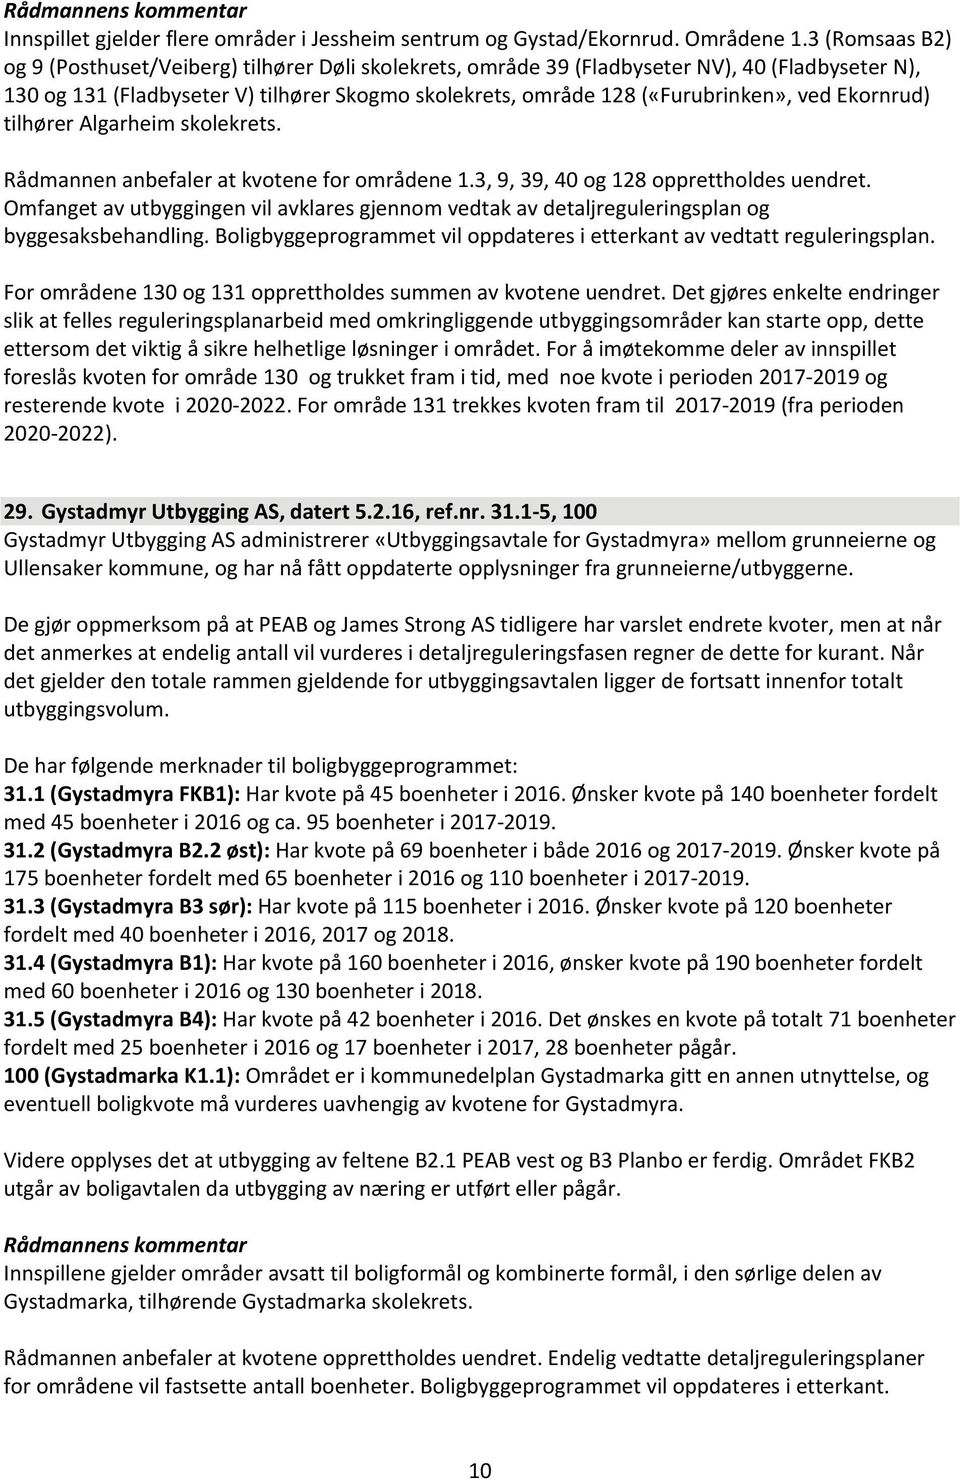 Ekornrud) tilhører Algarheim skolekrets. Rådmannen anbefaler at kvotene for områdene 1.3, 9, 39, 40 og 128 opprettholdes uendret.